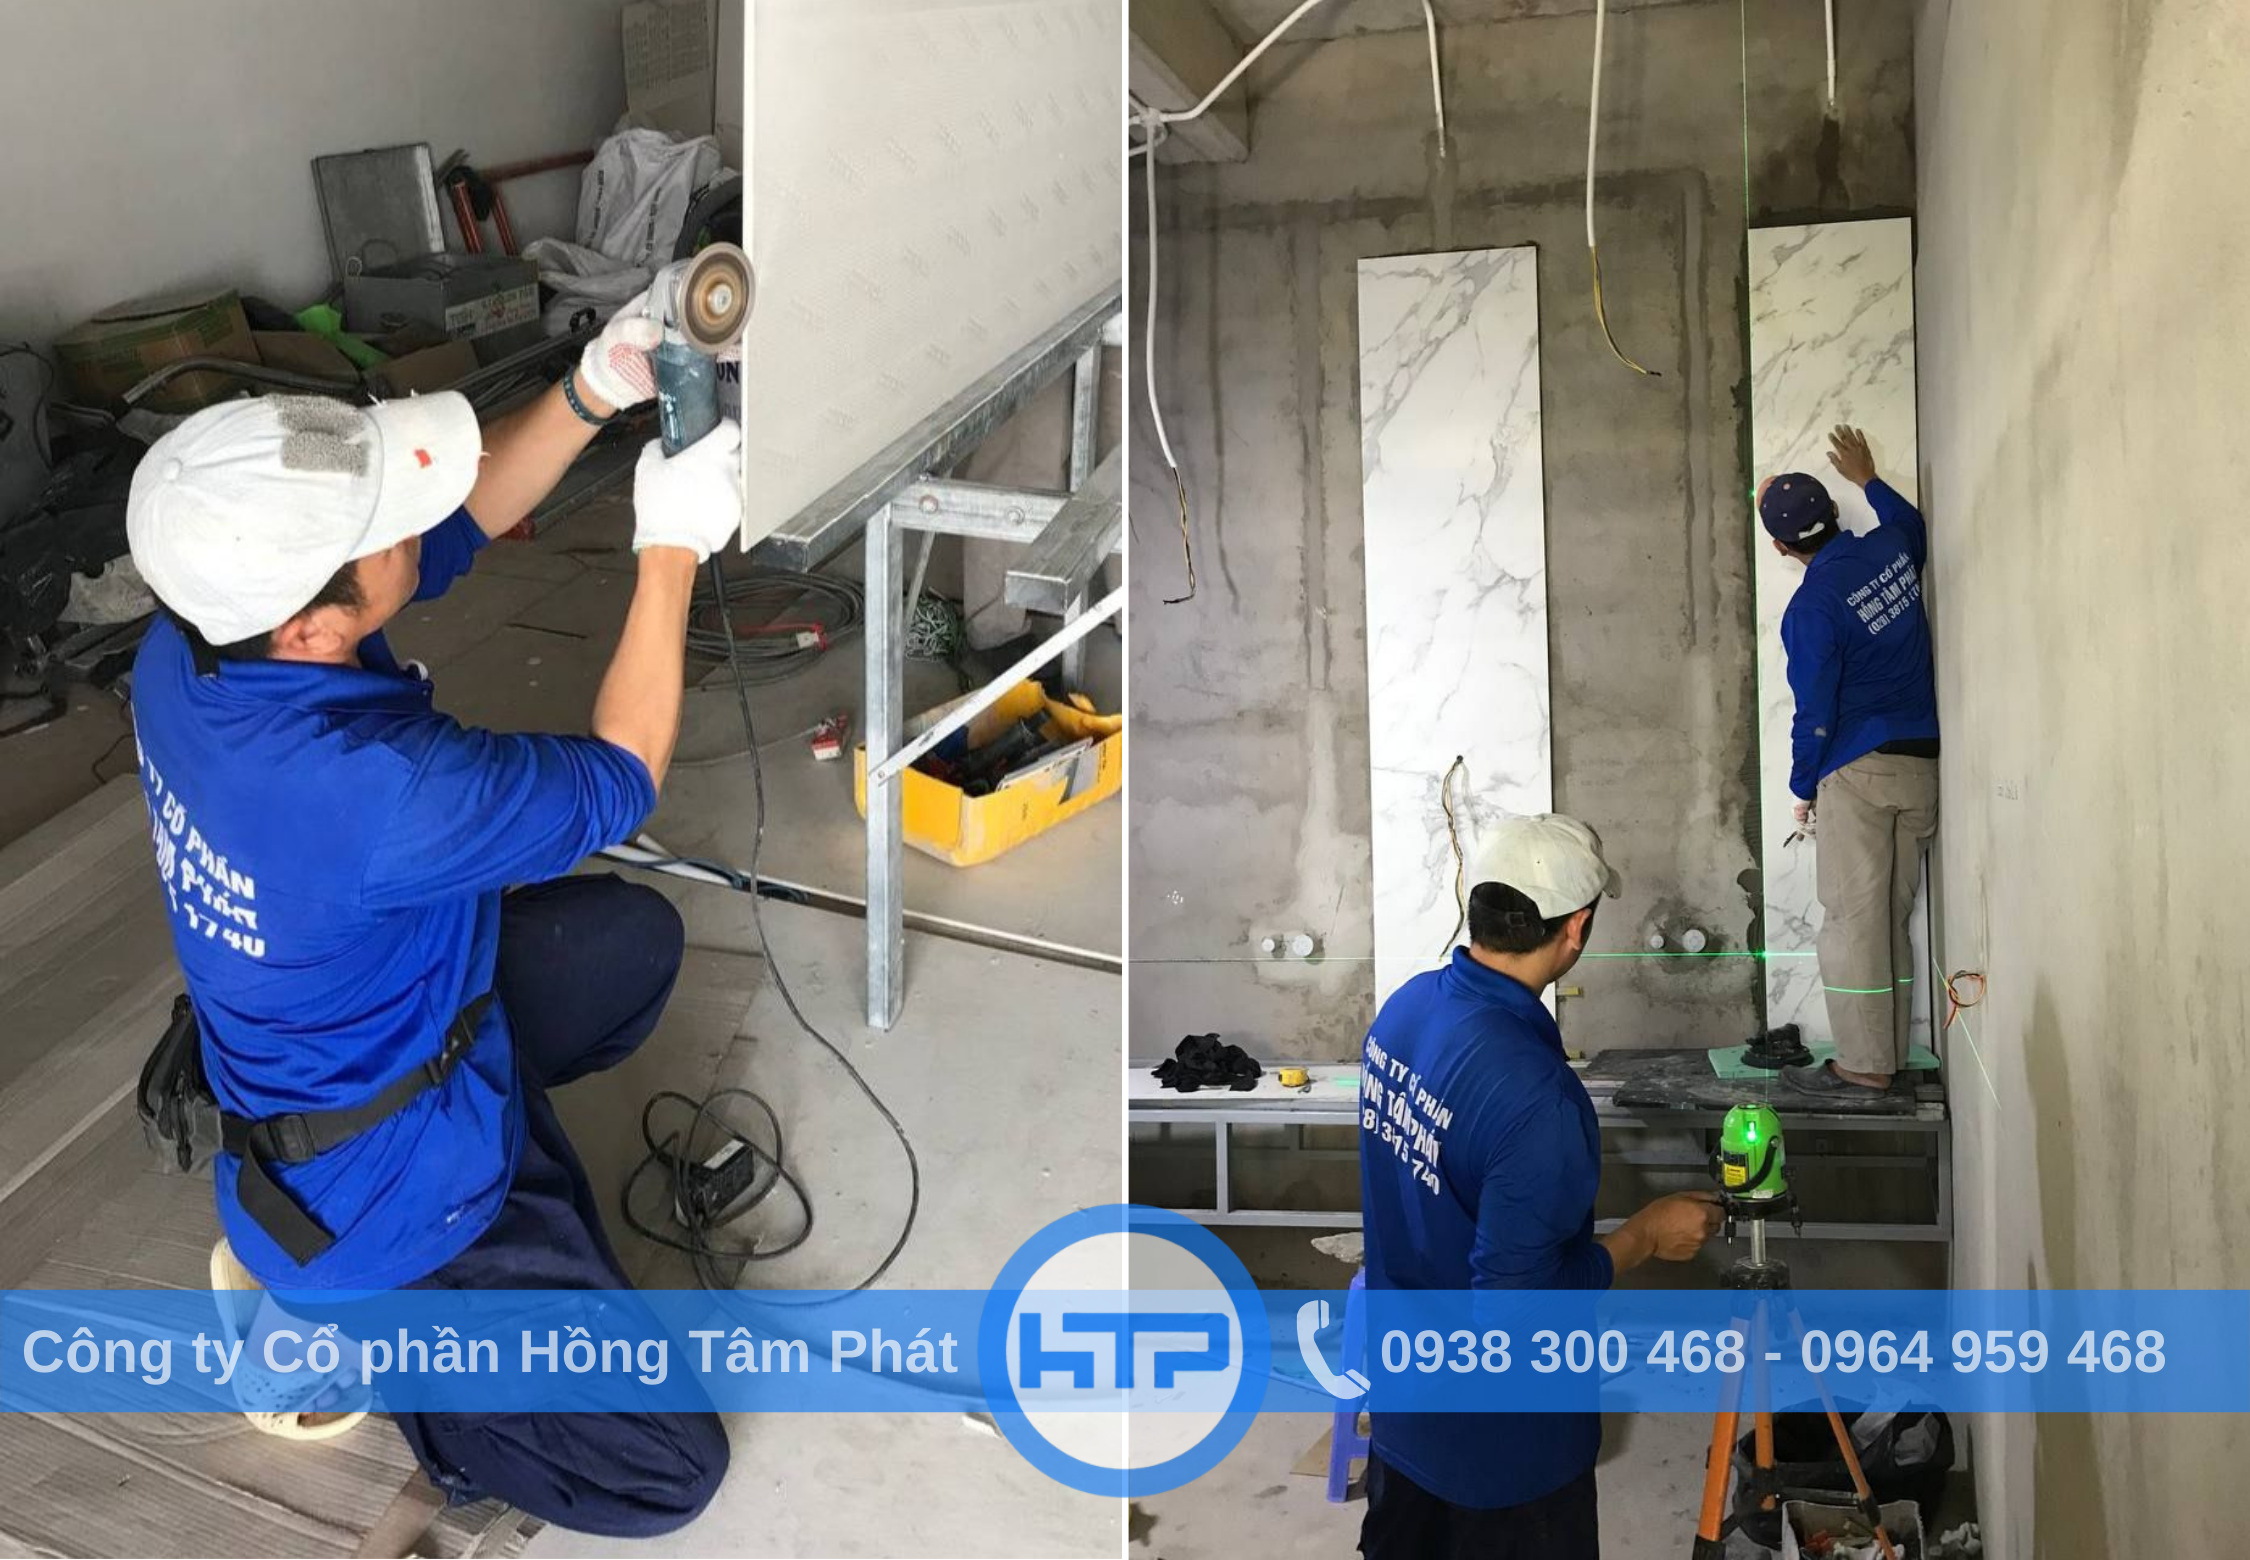 Hồng Tâm Phát cung cấp dịch vụ ốp lát gạch khổ lớn tại nhà máy VSIP I - Bình Dương